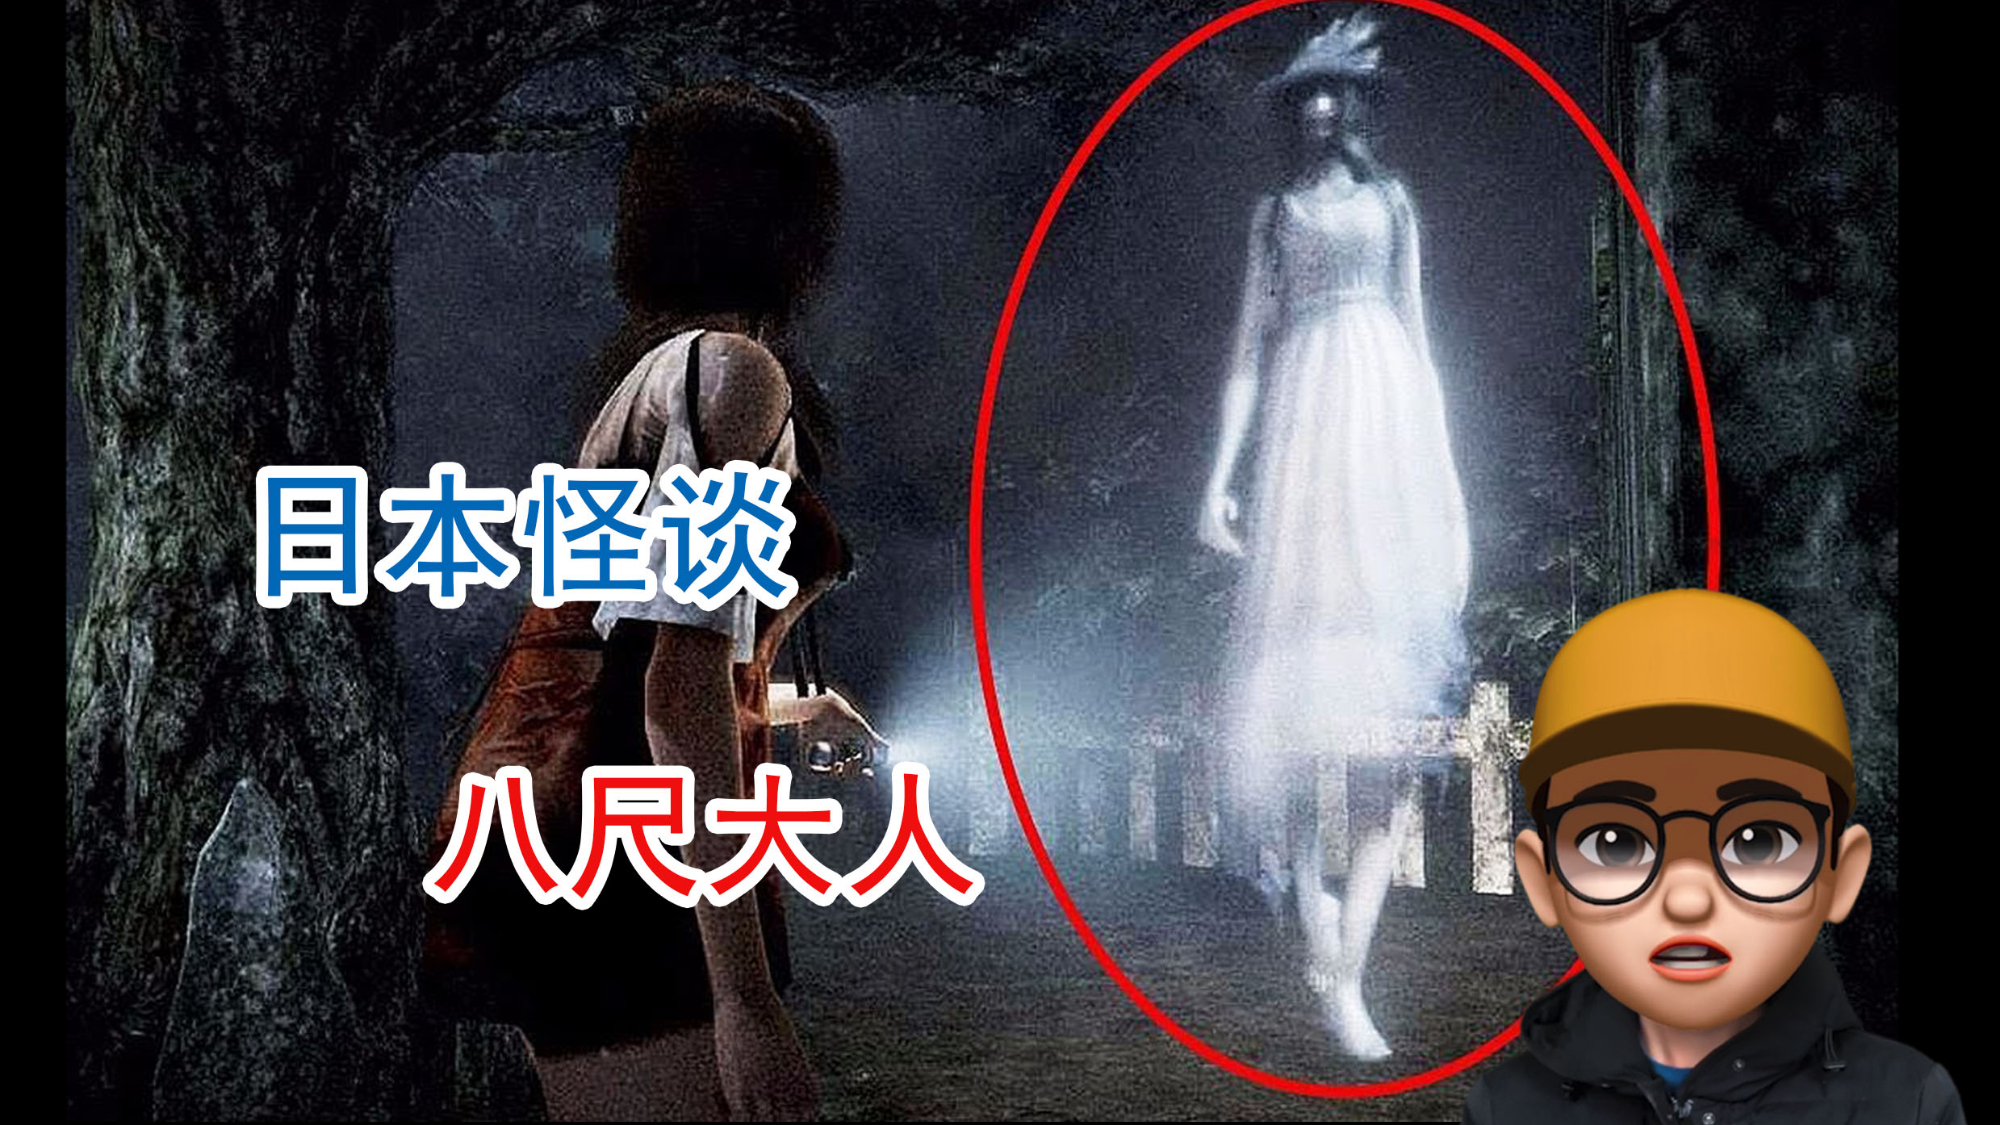 八尺大人,日本都市传说中身高2米4的神秘女郎